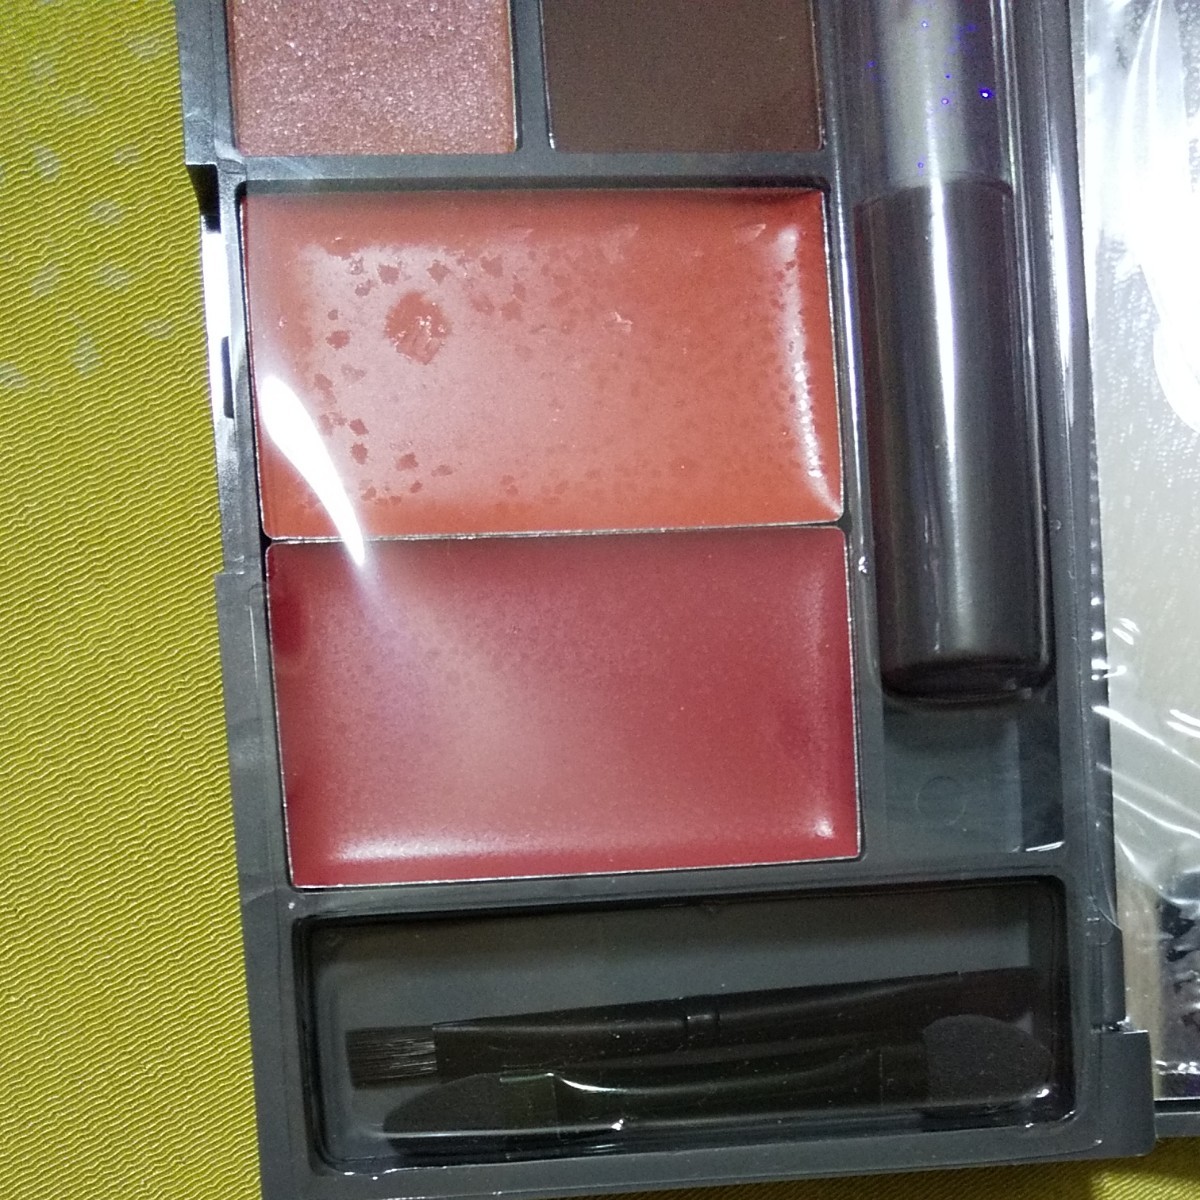 メイクパレット xgirl 口紅 アイシャドウ グロス メイク用品 鏡 パレット コスメ 化粧品 新品 メイクパレット